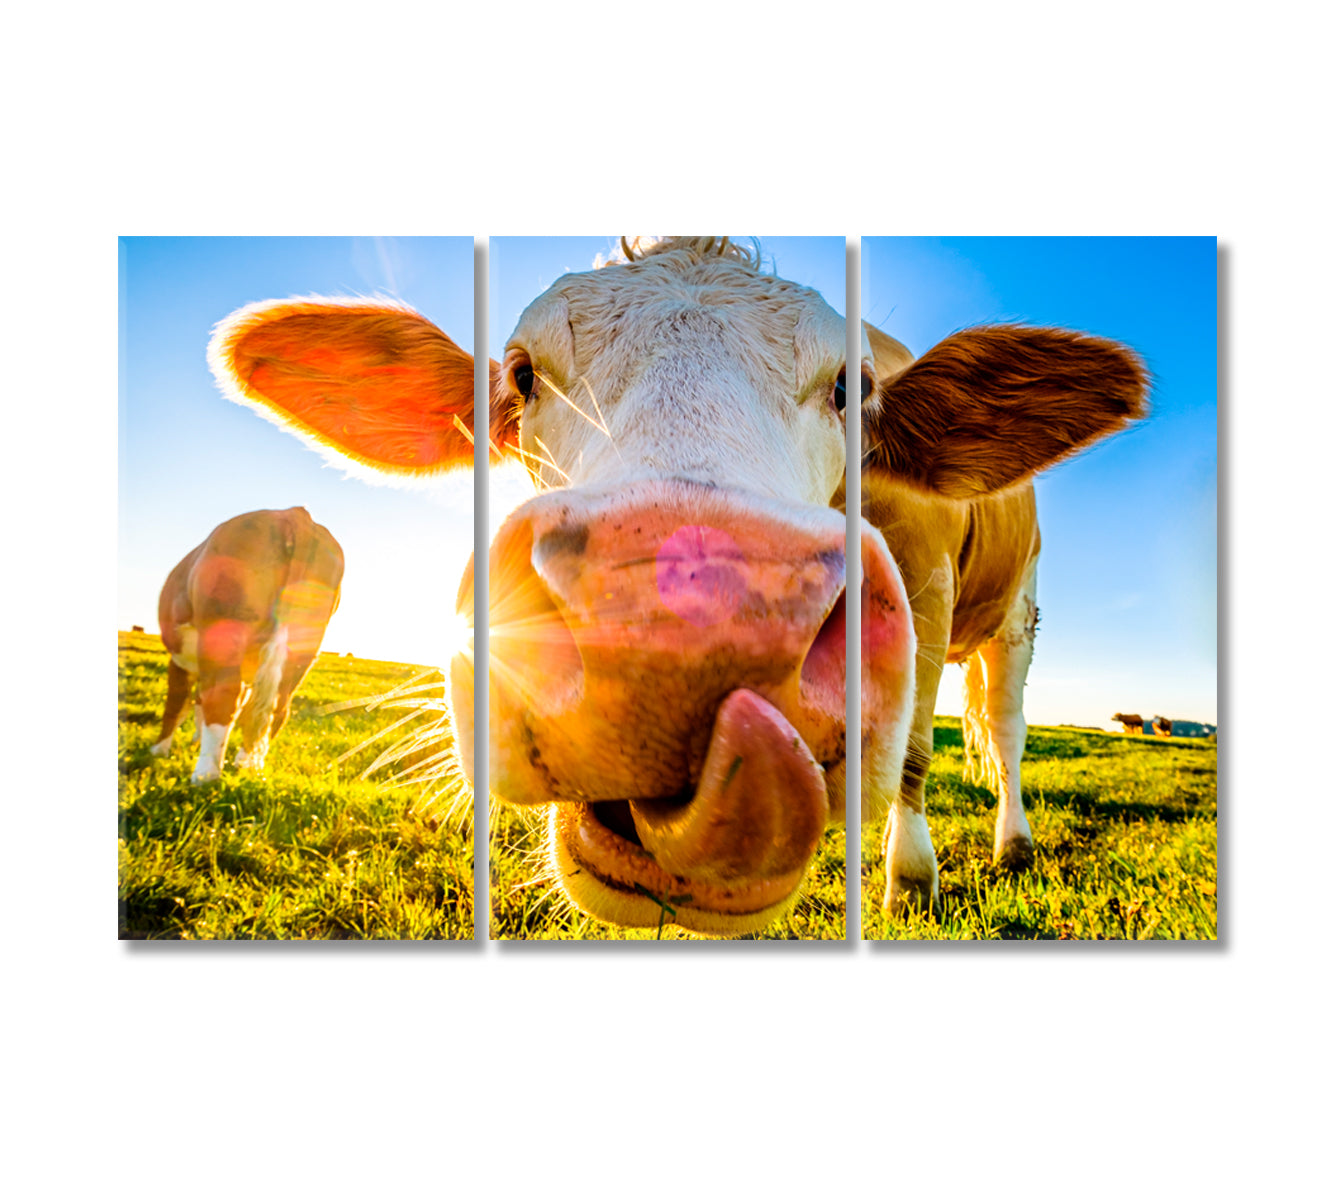 Cute Cow Canvas Print-Canvas Print-CetArt-3 Panels-36x24 inches-CetArt